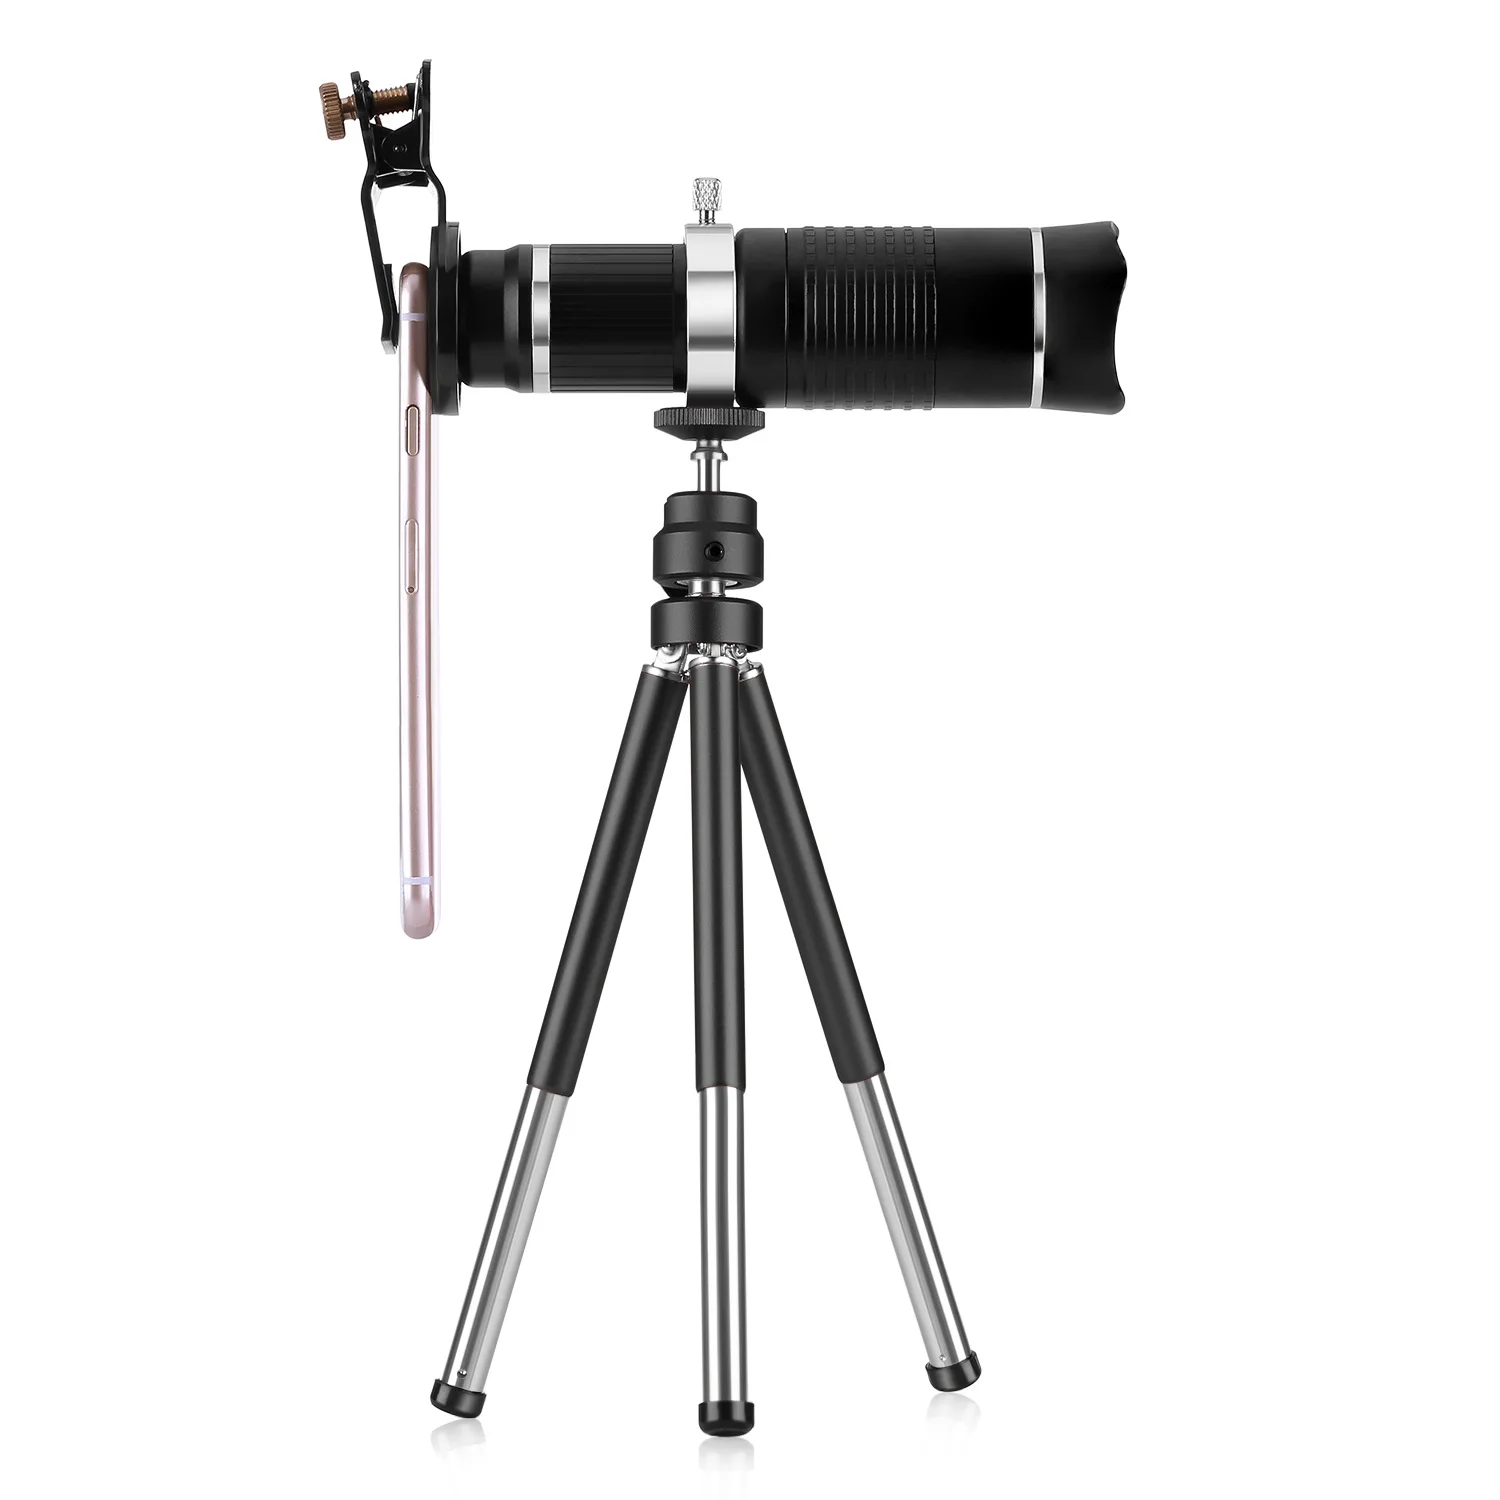 26X телескоп зум-объектив Монокуляр мобильный телефон объектив камеры для iPhone samsung Android смартфонов для кемпинга охоты концерта